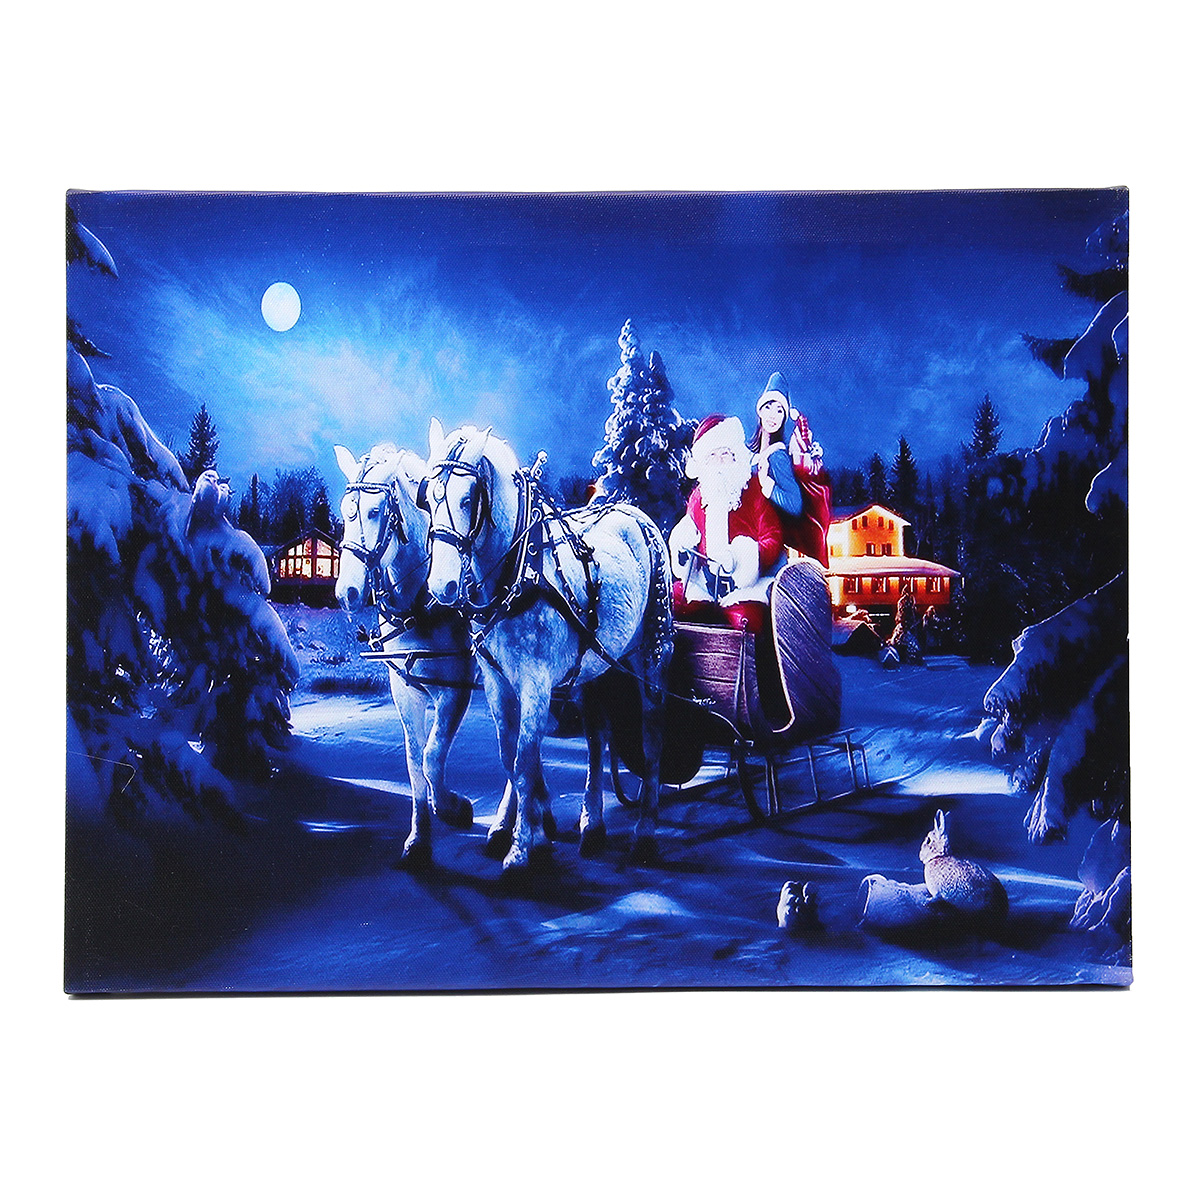 

40 x 30см работает LED Рождество Санта ездить белый конь на уличных Xmas холст печати стены искусства